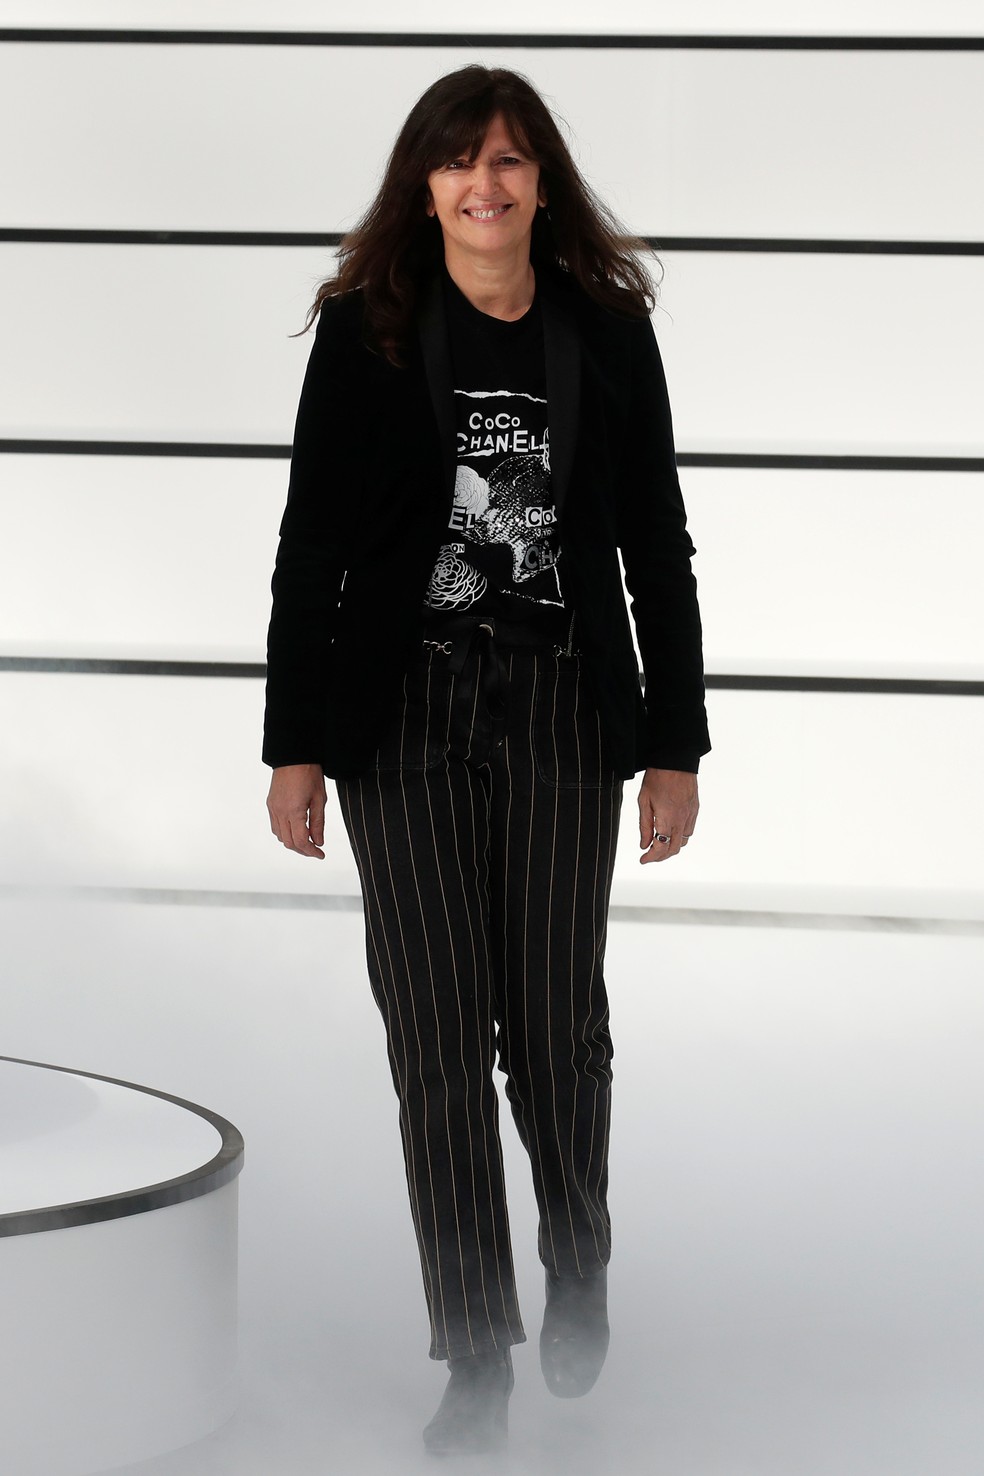 A estilista francesa Virginie Viard foi braço direito de Karl Lagerfeld por 32 anos, tendo sido nomeada diretora criativa da Chanel logo após a morte do designer, em 2019 — Foto: Reuters